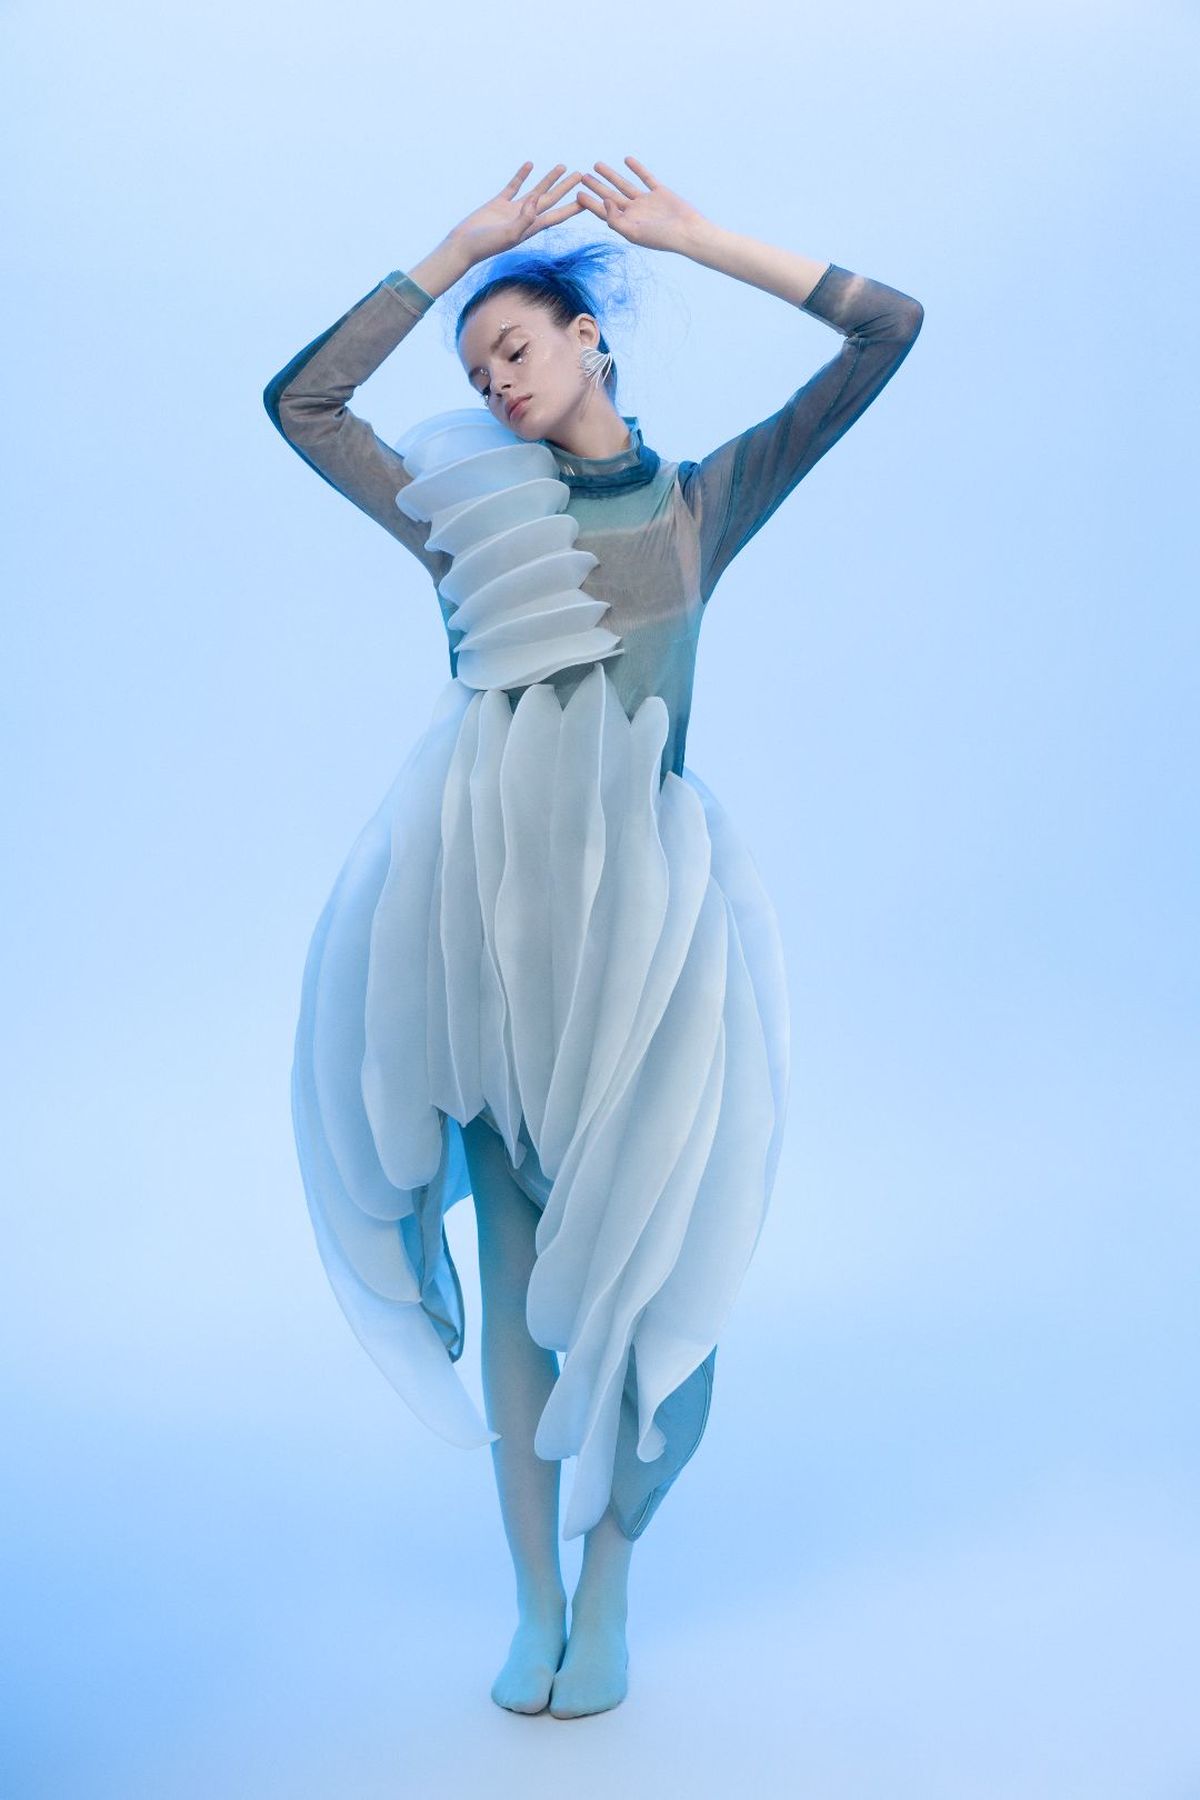 一位戴蓝发、穿白裙子的女子在蓝色背景上跳舞